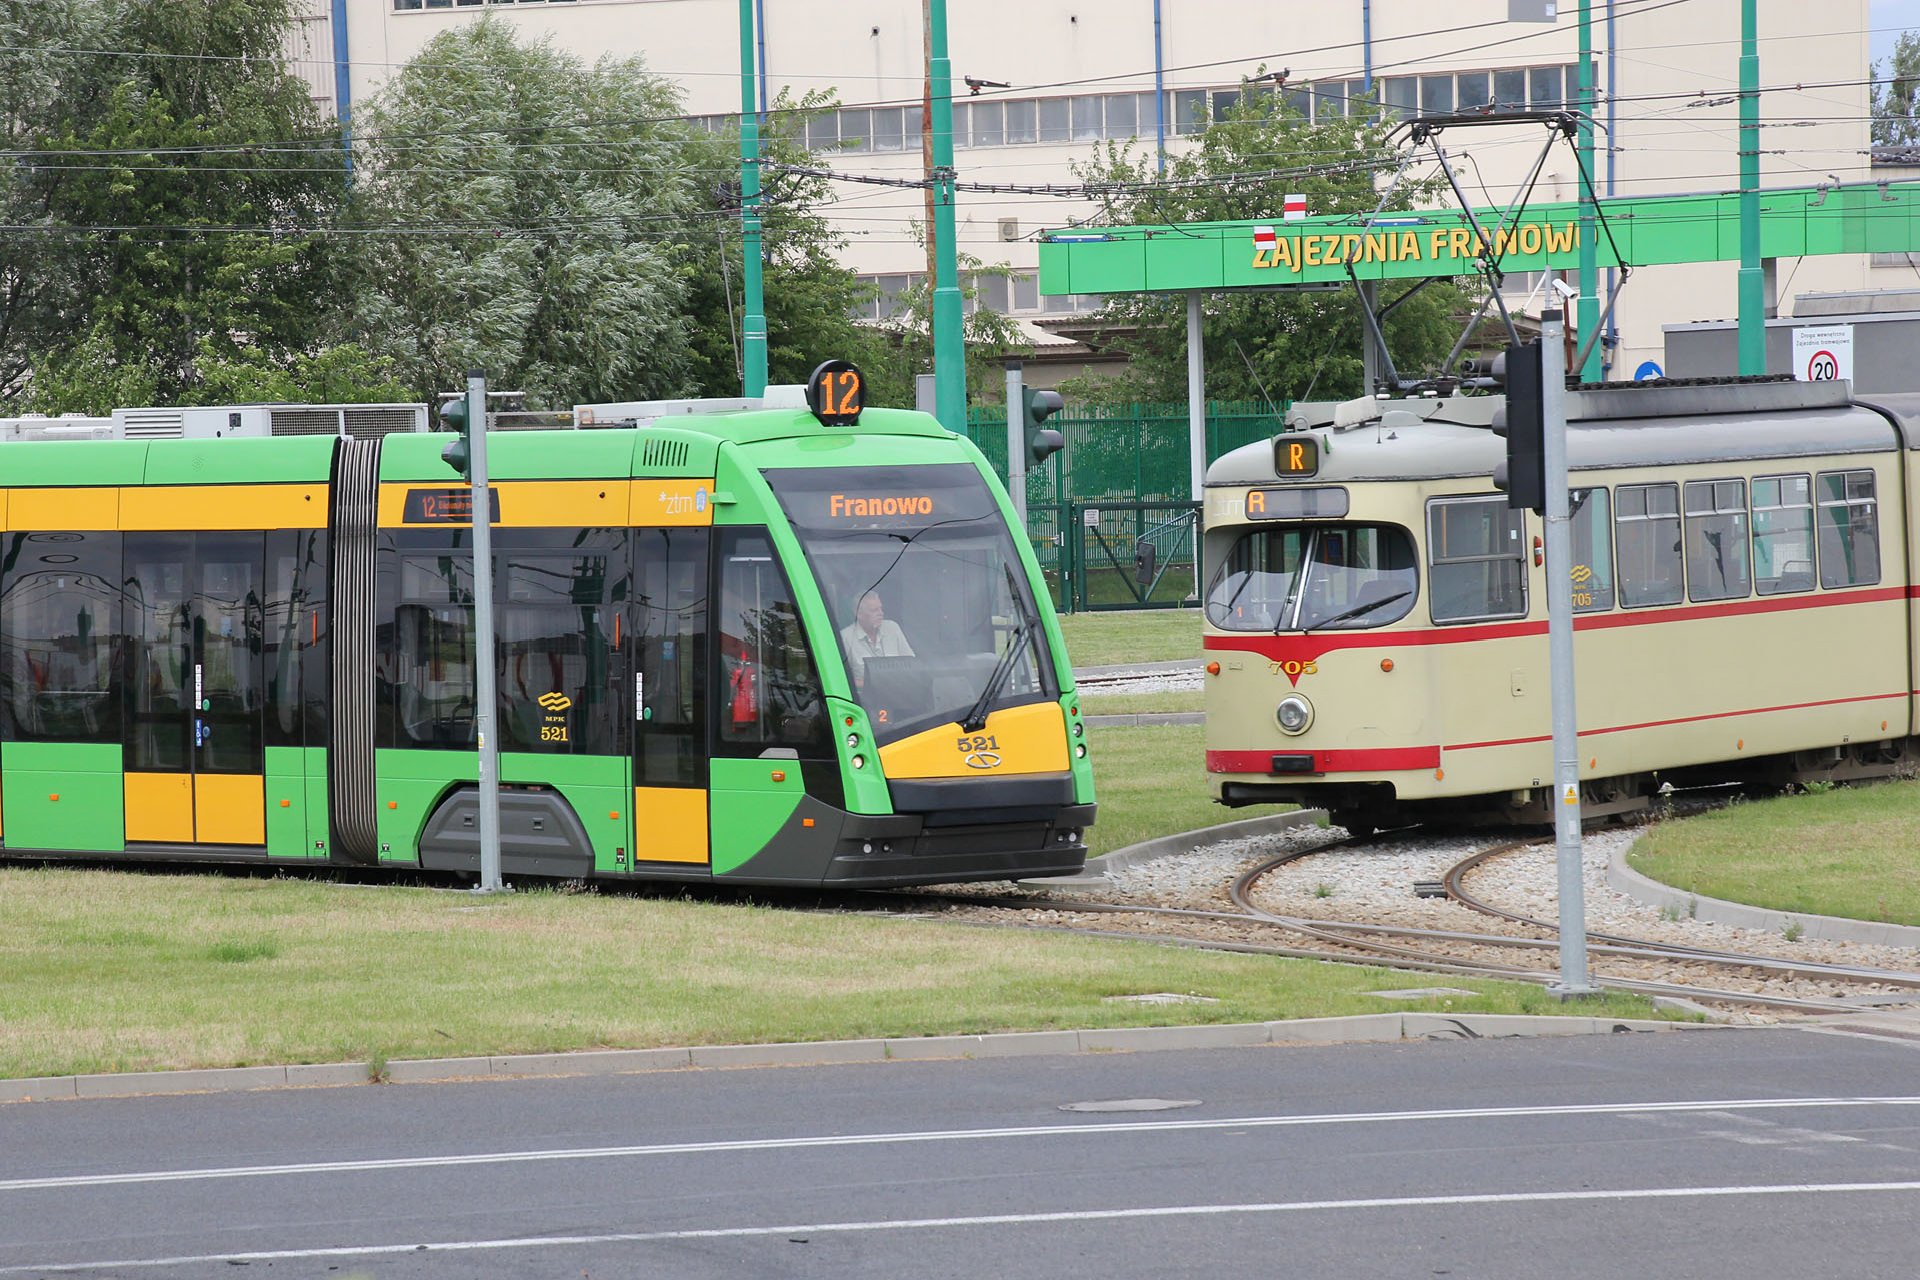 Tramino 521 GT8 705 Franowo - wo die neuen mit den alten Straßenbahnen zusammen kommen. Franowo - where the new trams meet the old trams.